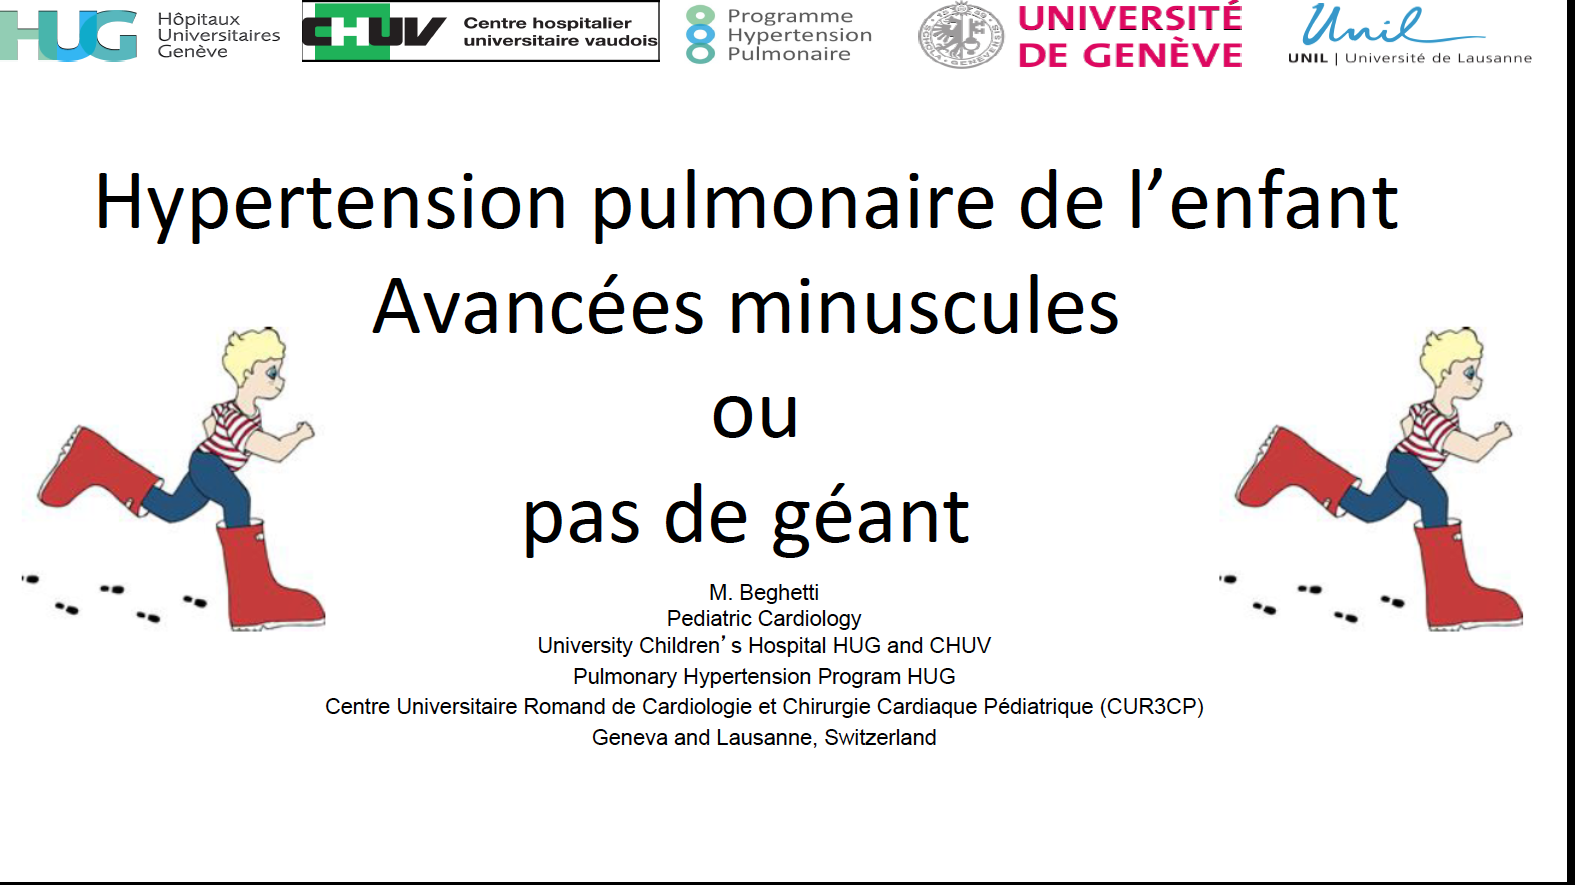 Hypertension pulmonaire de l'enfant Pas de géants ou avancées minuscules - Maurice Beghetti 2019